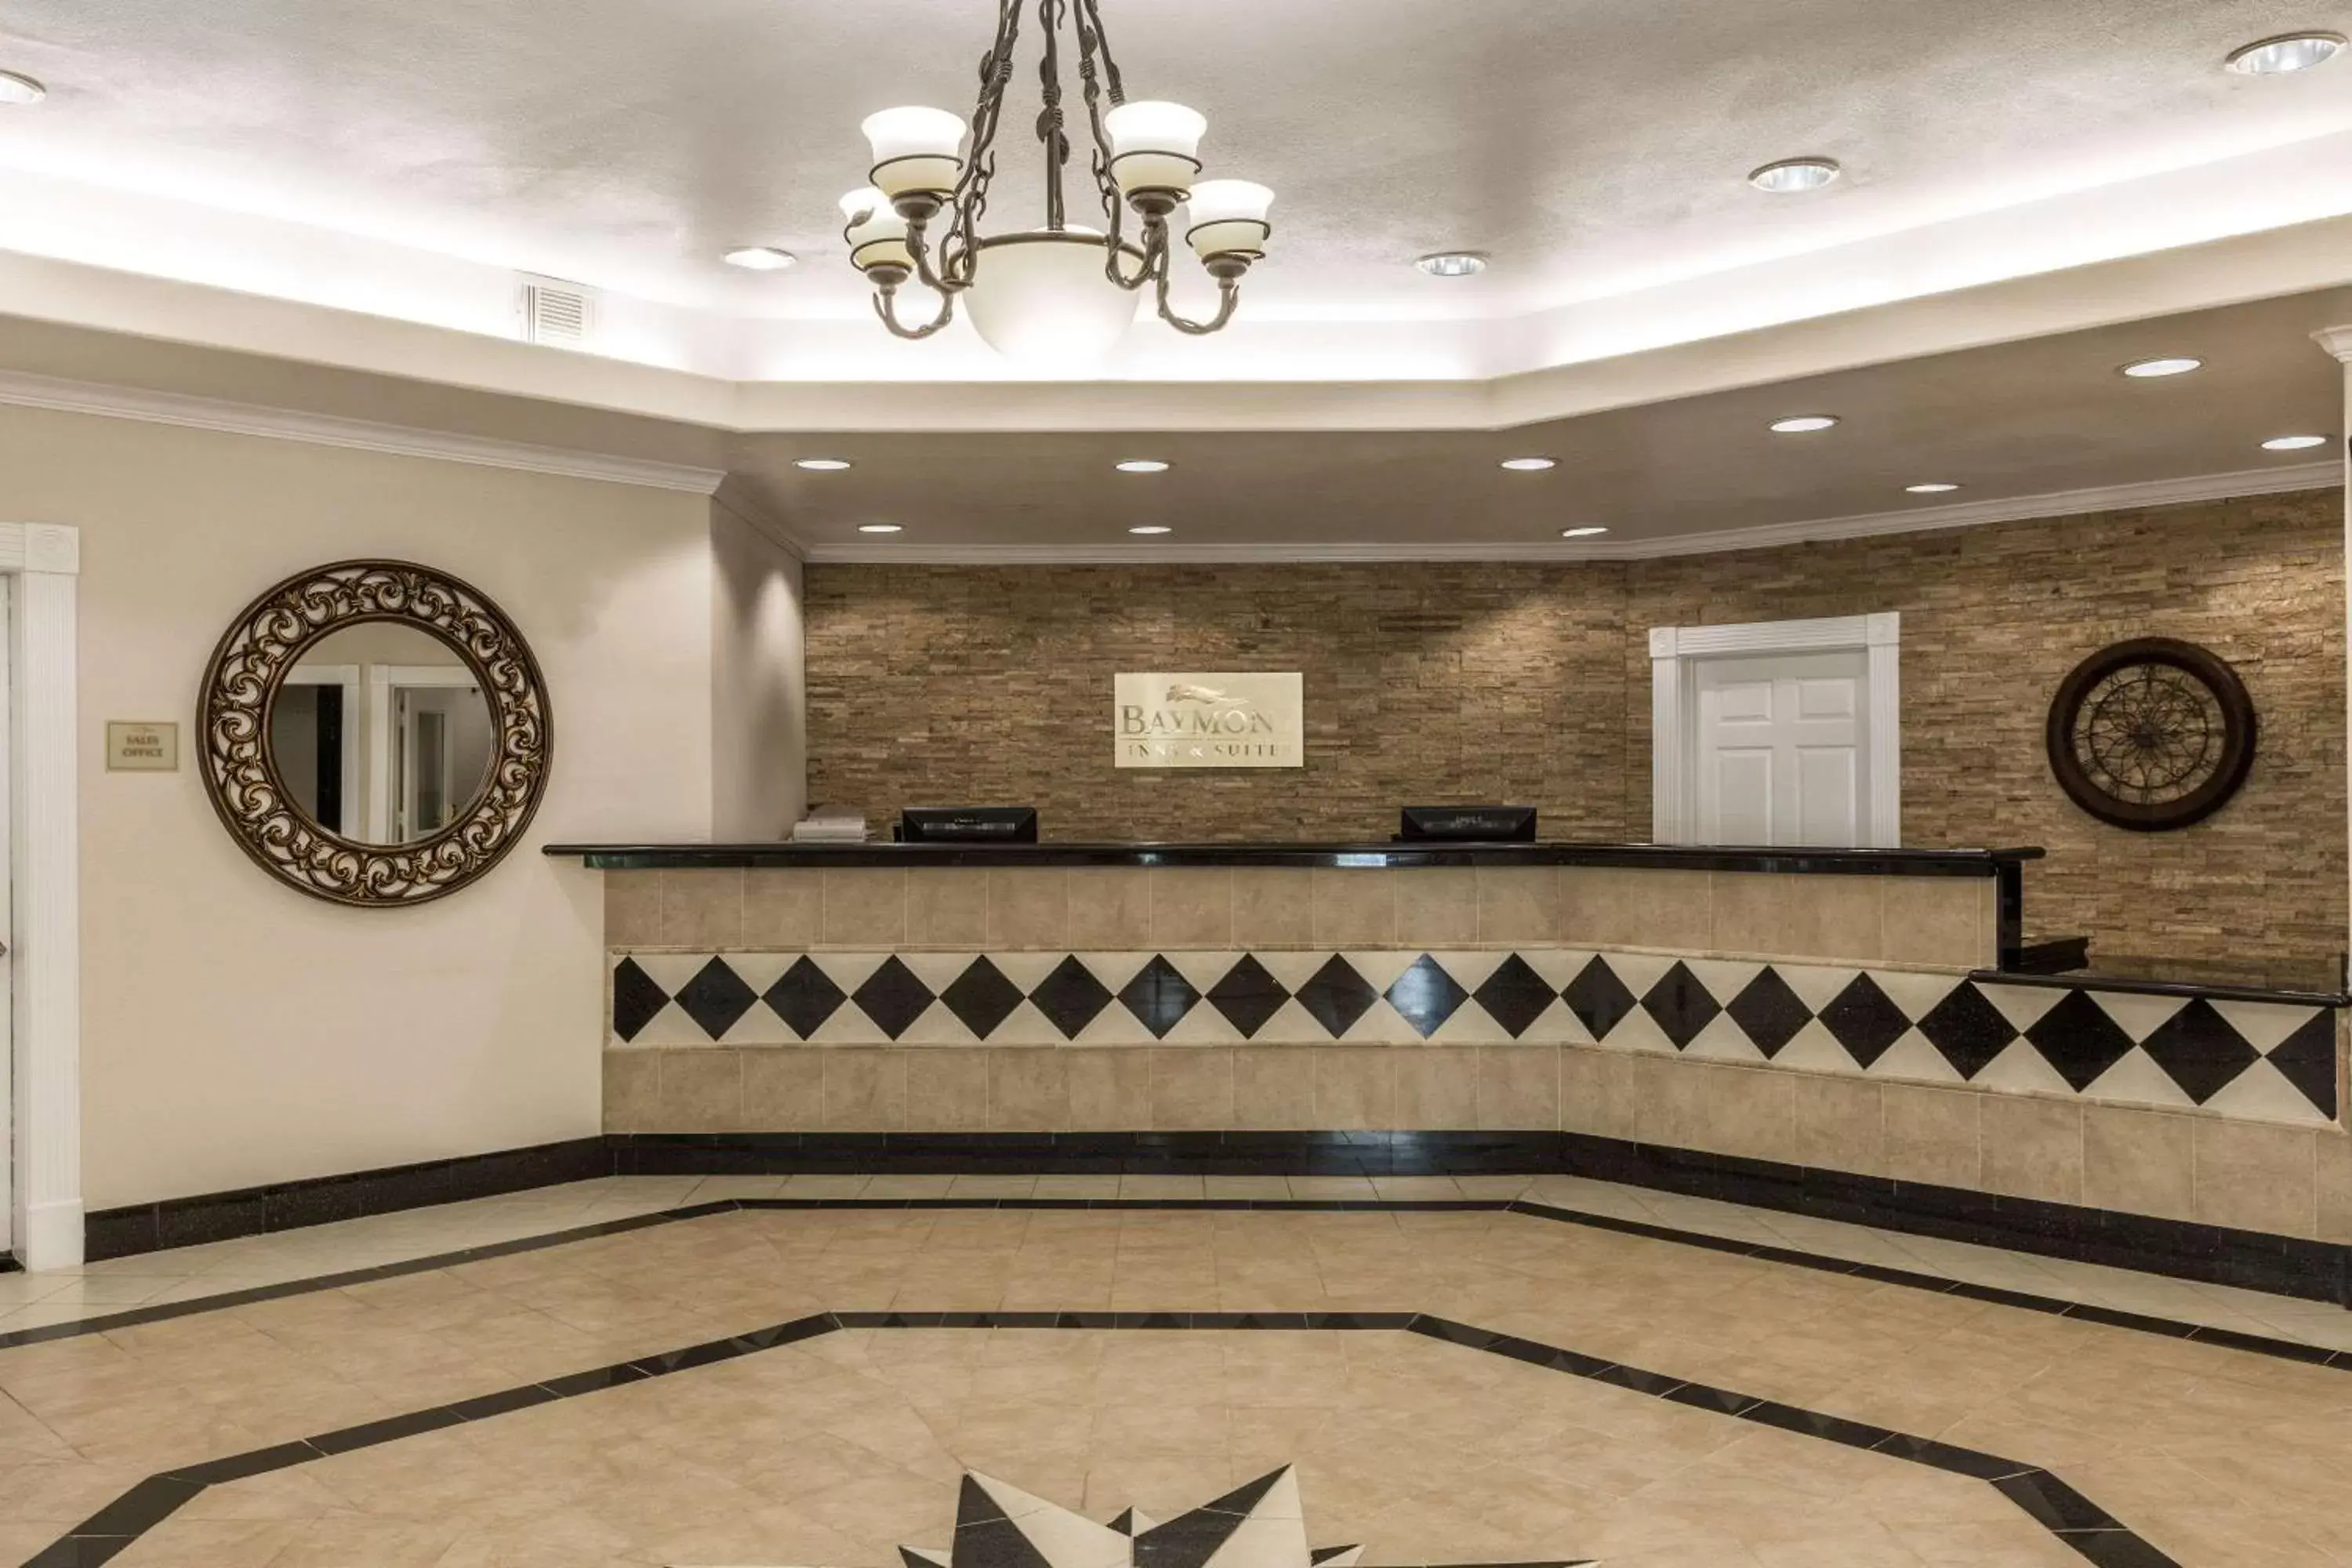 Lobby or reception, Lobby/Reception in Baymont by Wyndham Galveston